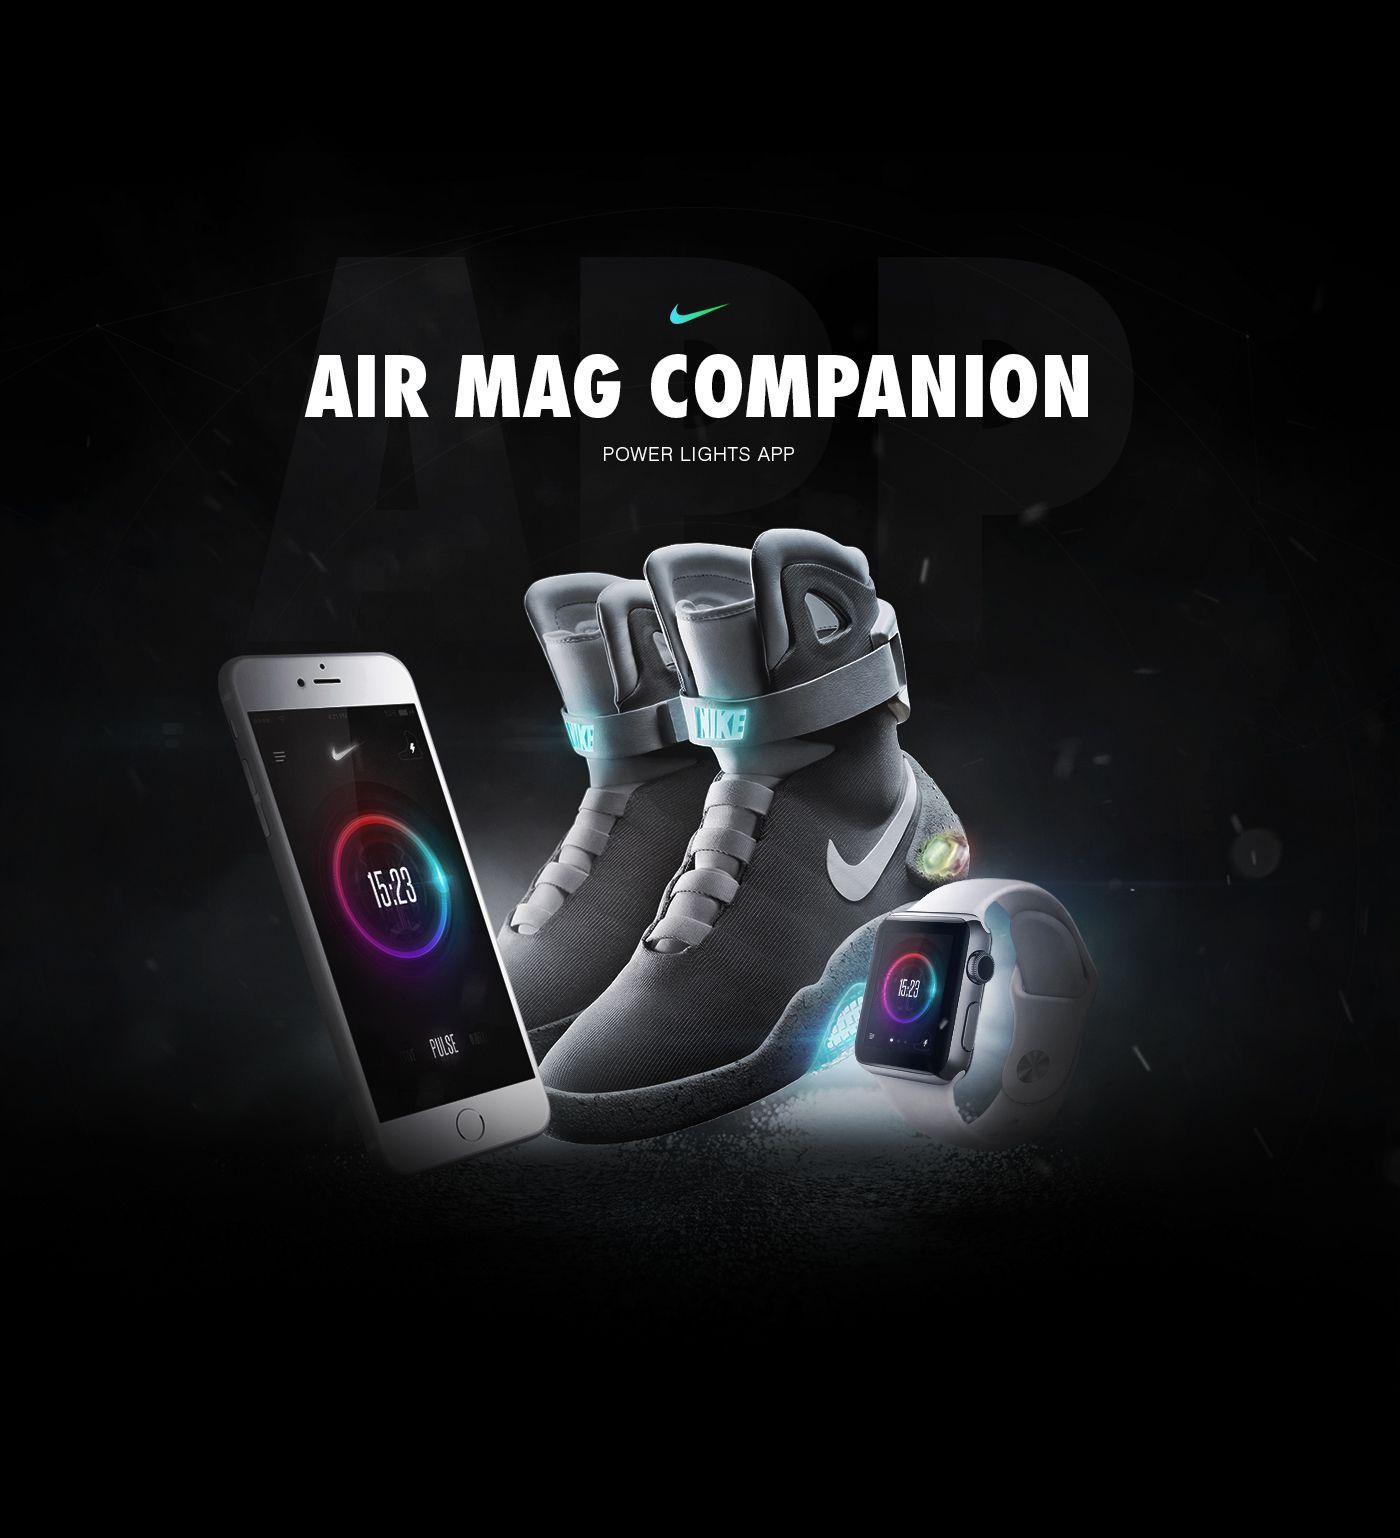 Nike Air Mag & App Concept